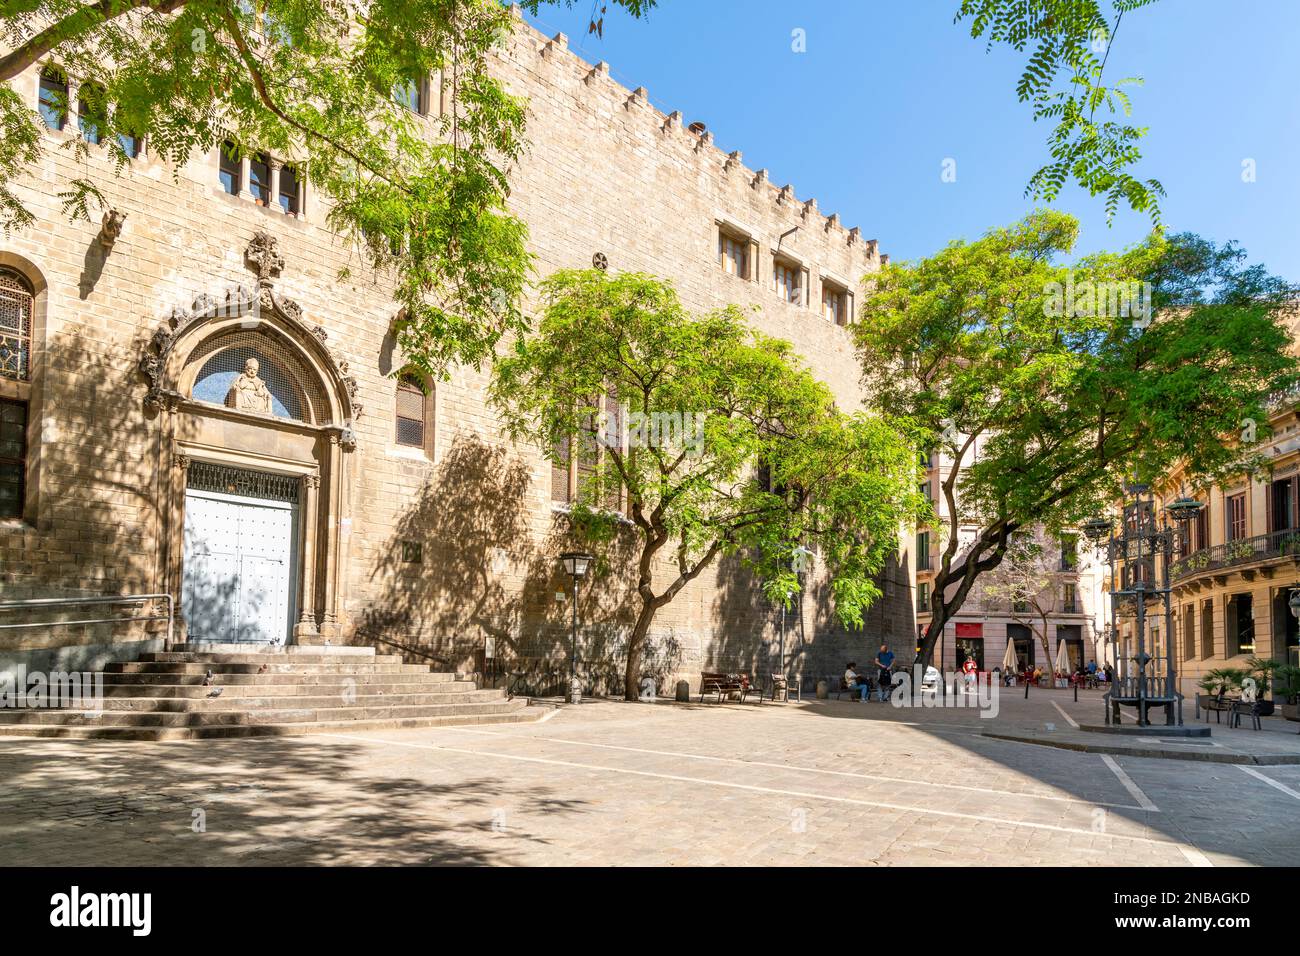 L'église catholique Sant Pere des Puelles sur la Plaza de San Pedro, ou Placa Sant Pere, dans le quartier gothique El Born de Barcelone, en Espagne. Banque D'Images